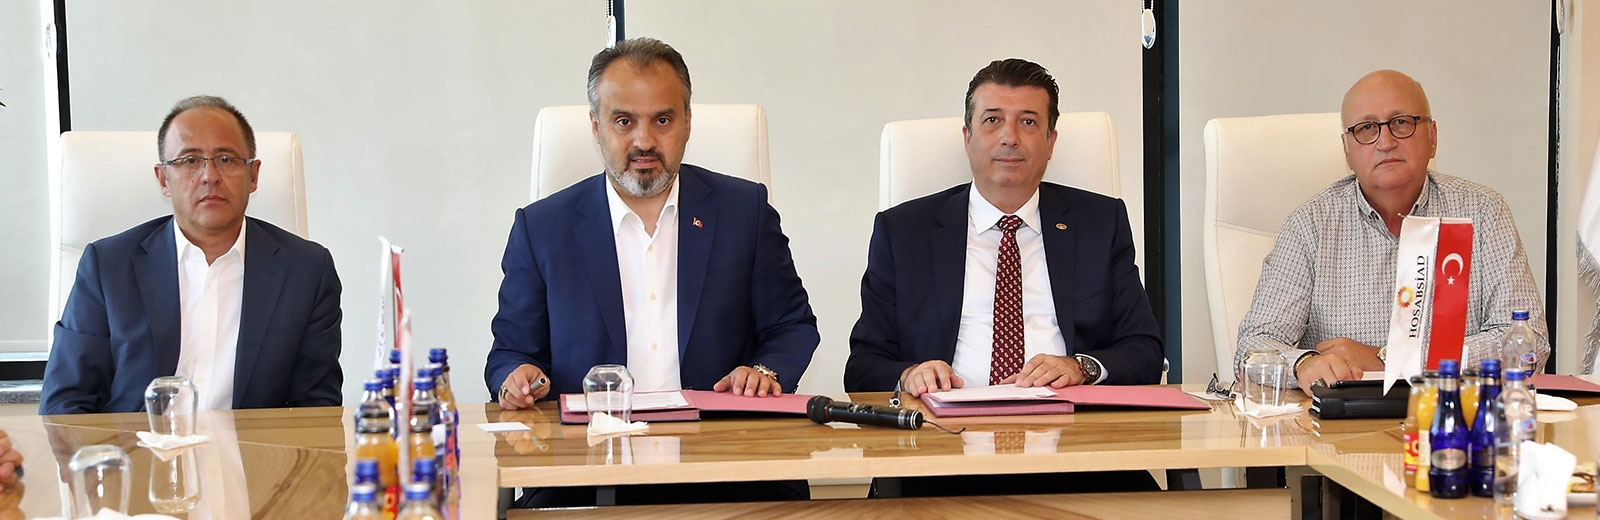 Bursa Büyükşehir Belediyesi  ve HOSAB arasında protokol imzalandı